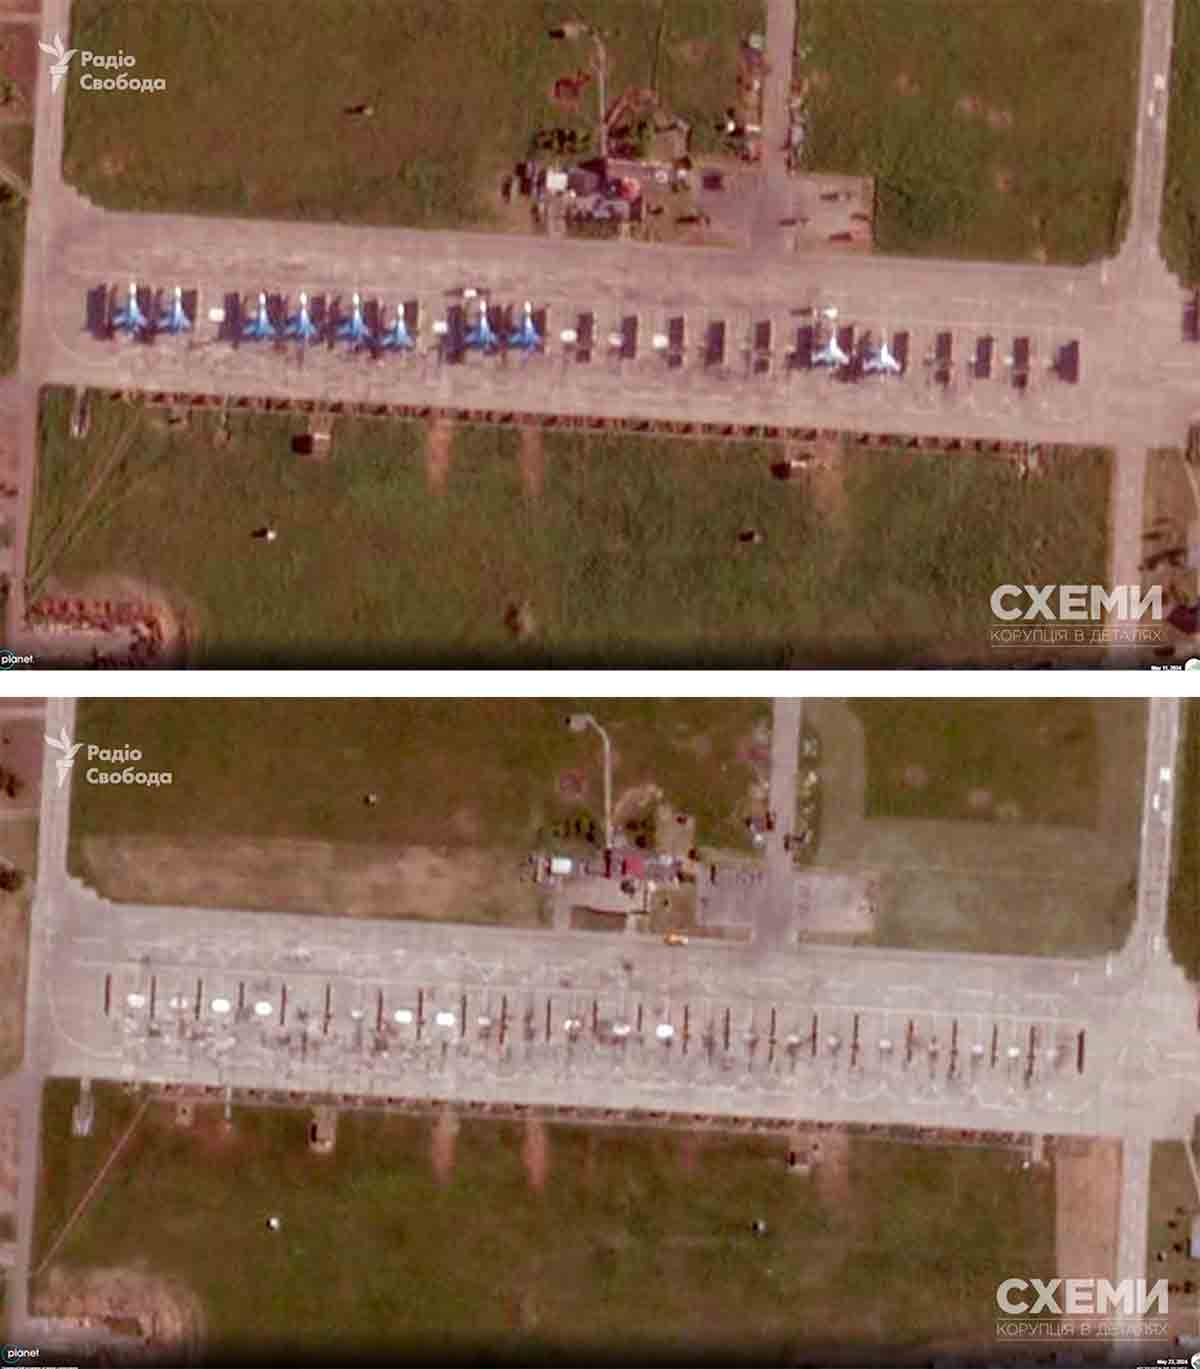 Fly fra "Russiske Riddere" ødelagt i droneangrep på den russiske flybasen Kushchevskaya. Foto: Reprodução cxemu